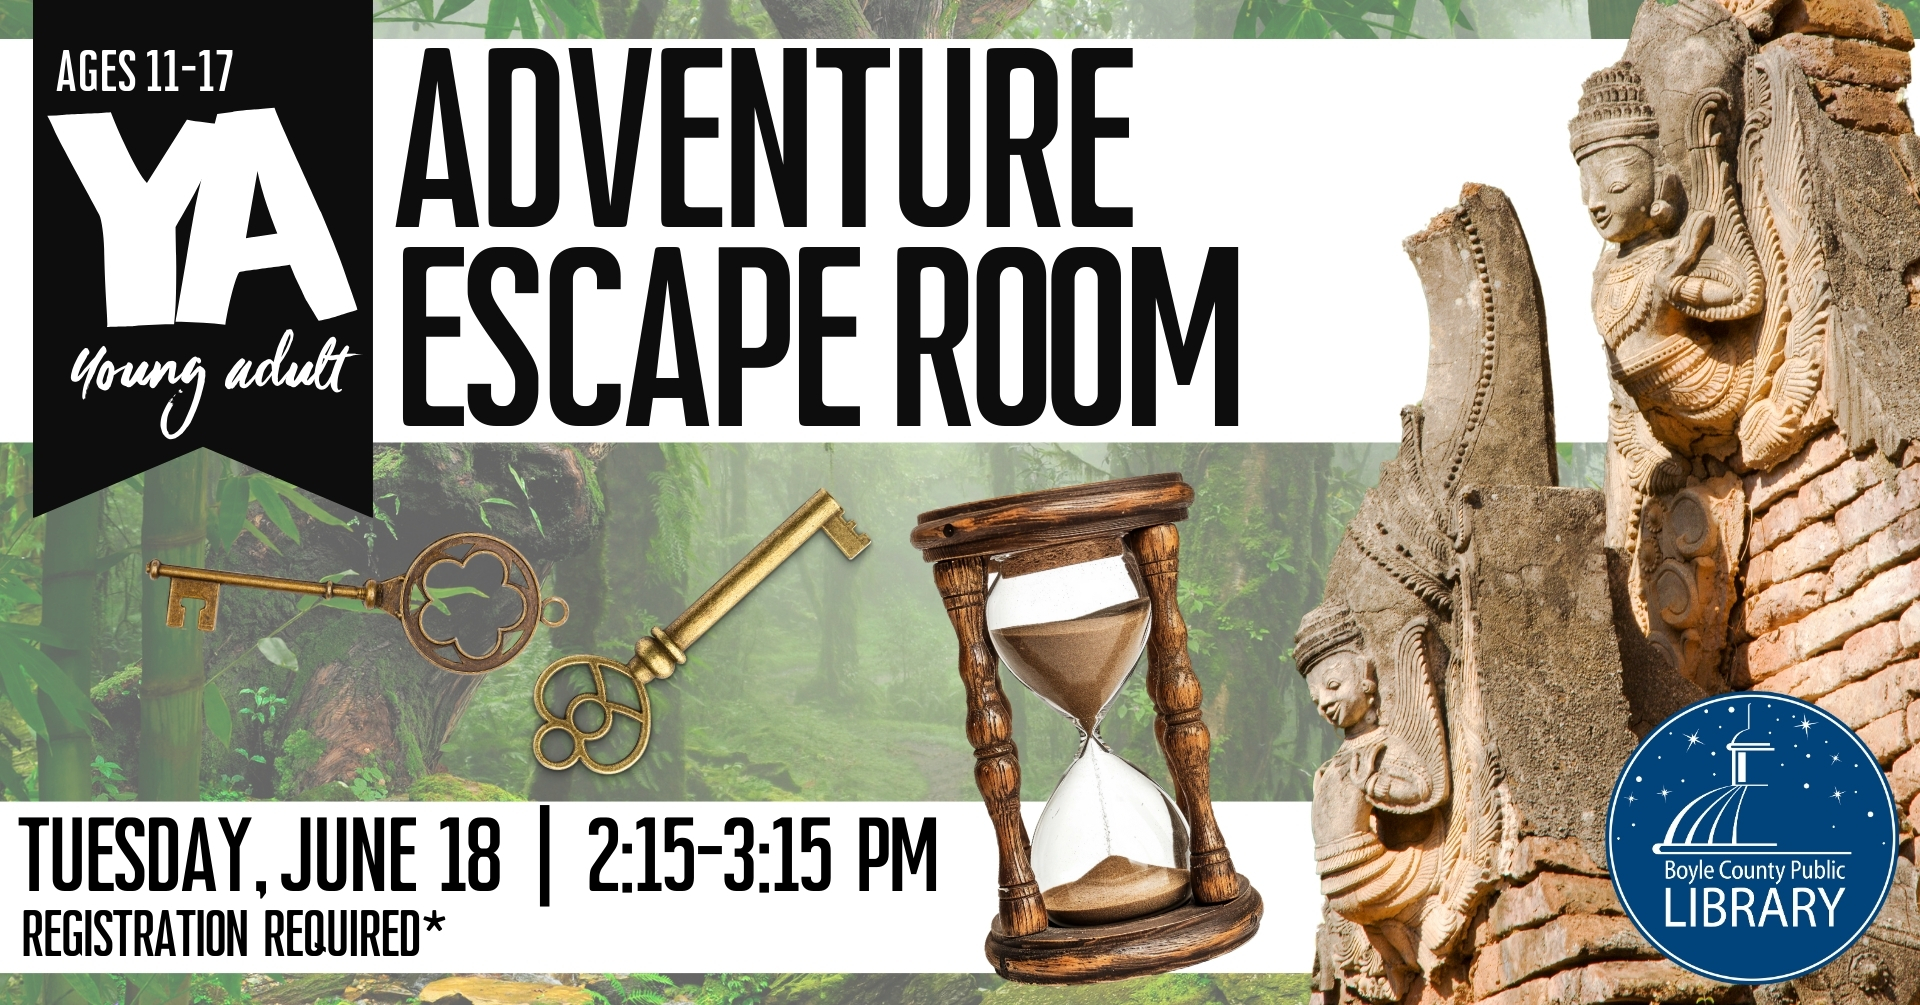 YA Adventure Escape Room Poster